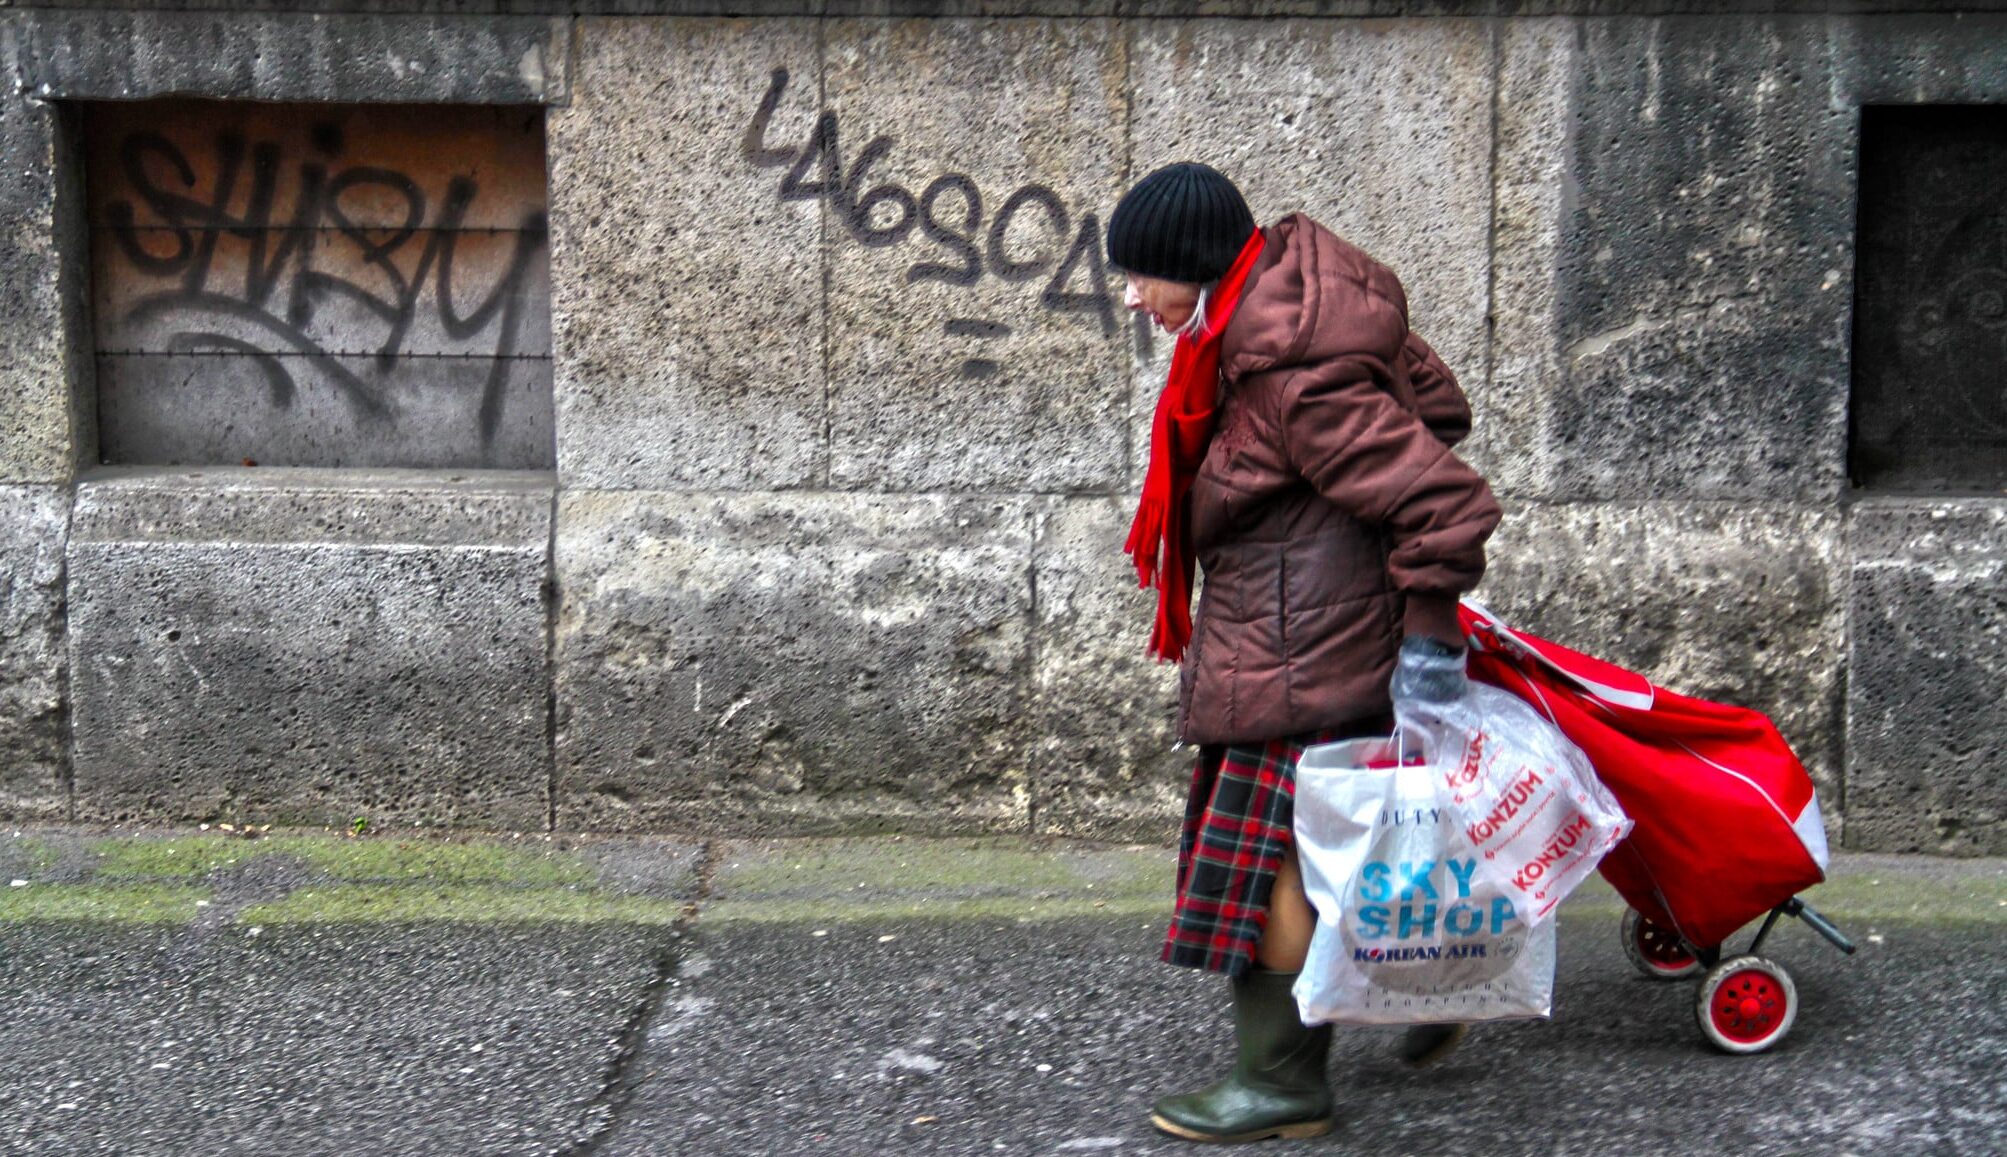 Italiani sempre più poveri. Il 57% riesce a stento ad arrivare a fine mese. Il quadro che emerge dall’ultimo Rapporto Eurispes è desolante